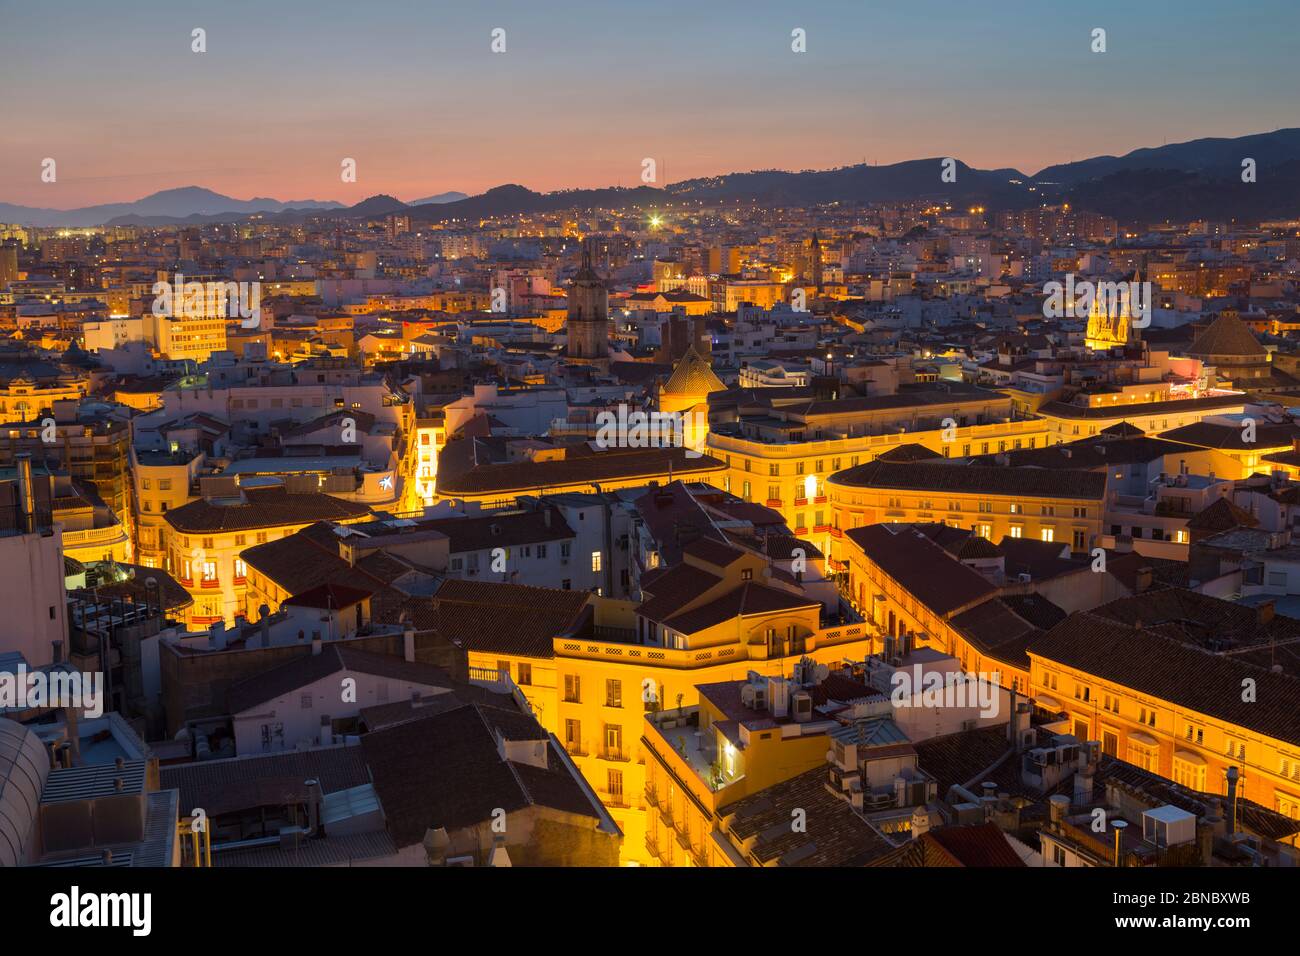 Erhöhte Sicht vom Hoteldach der Altstadt von Malaga in der Abenddämmerung, Malaga, Costa Del Sol, Andalusien, Spanien, Europa Stockfoto